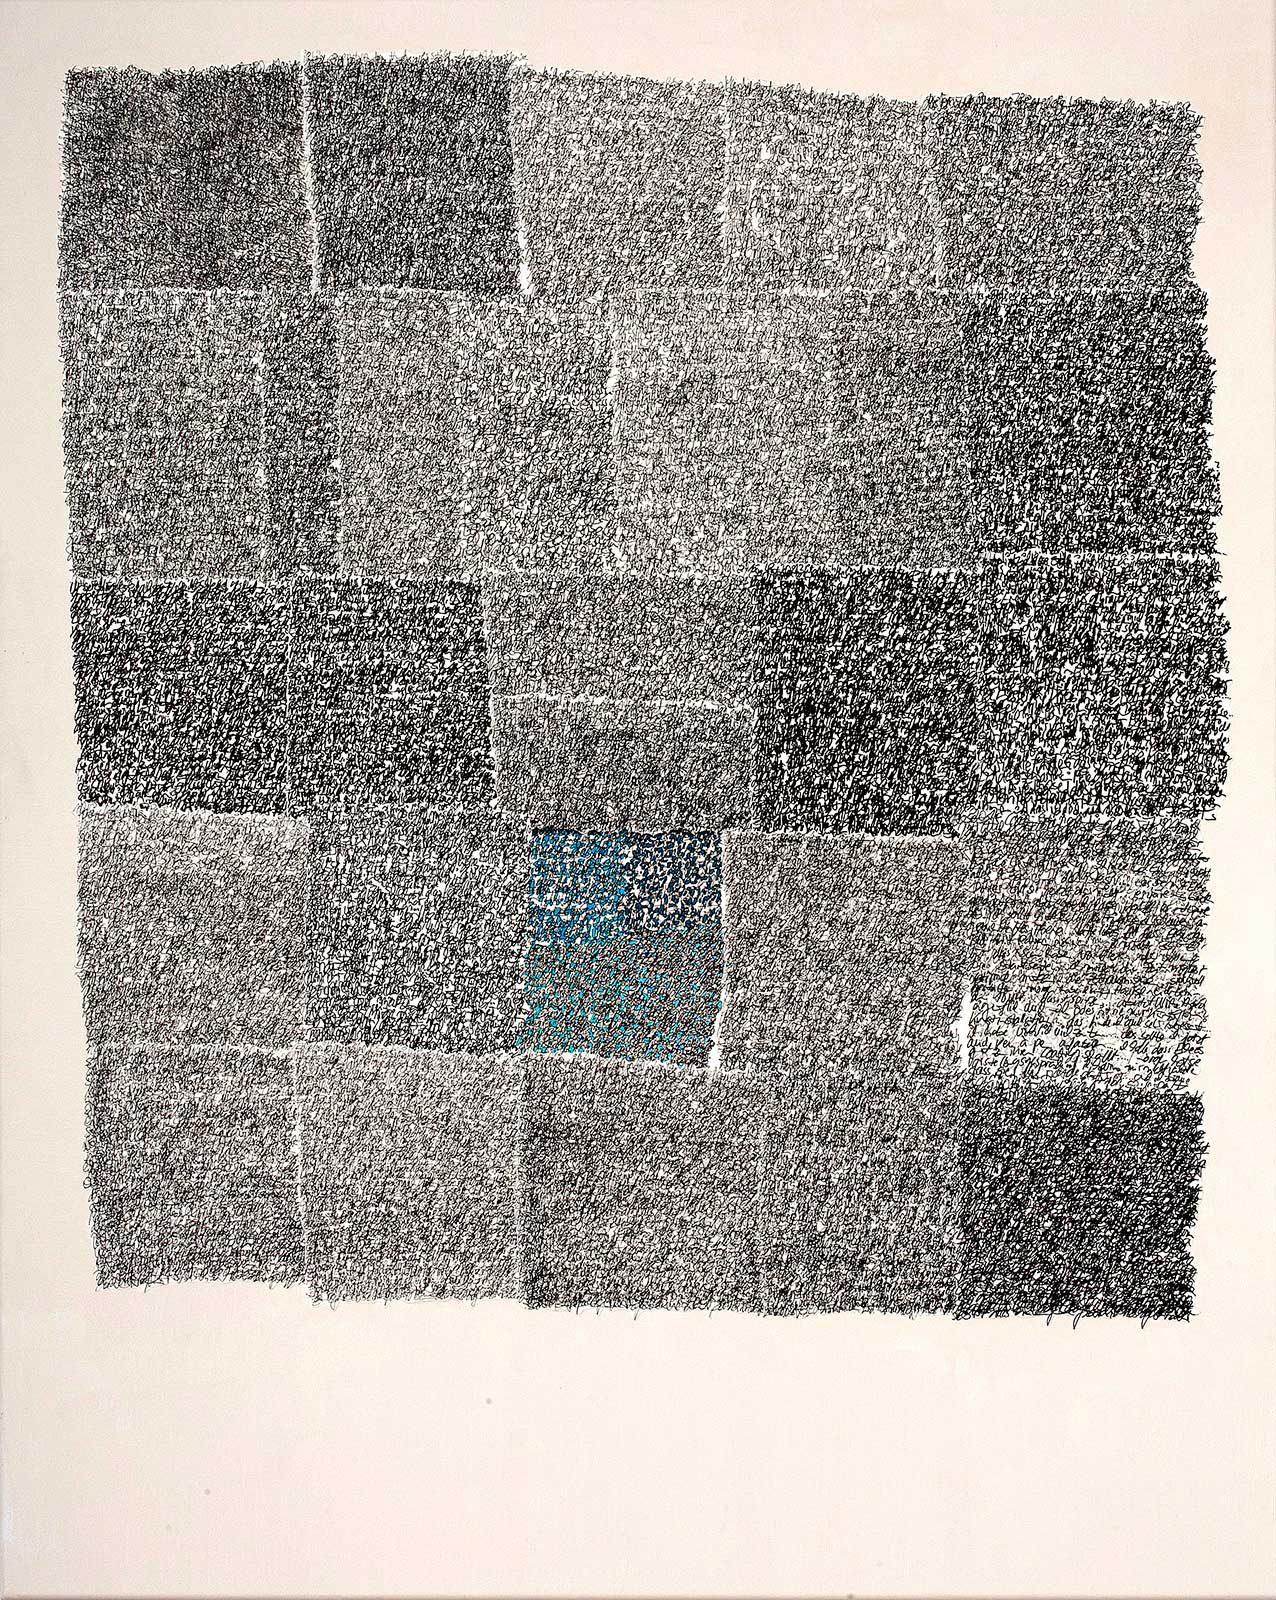 Die zeitgenössische Collage Denkstoff (1)  von Doris Junker ist eine experimentelle Auseinandersetzung mit Handschrift und ihrer Struktur in Kombination mit Farbe. Foto von Dagmar Morath.